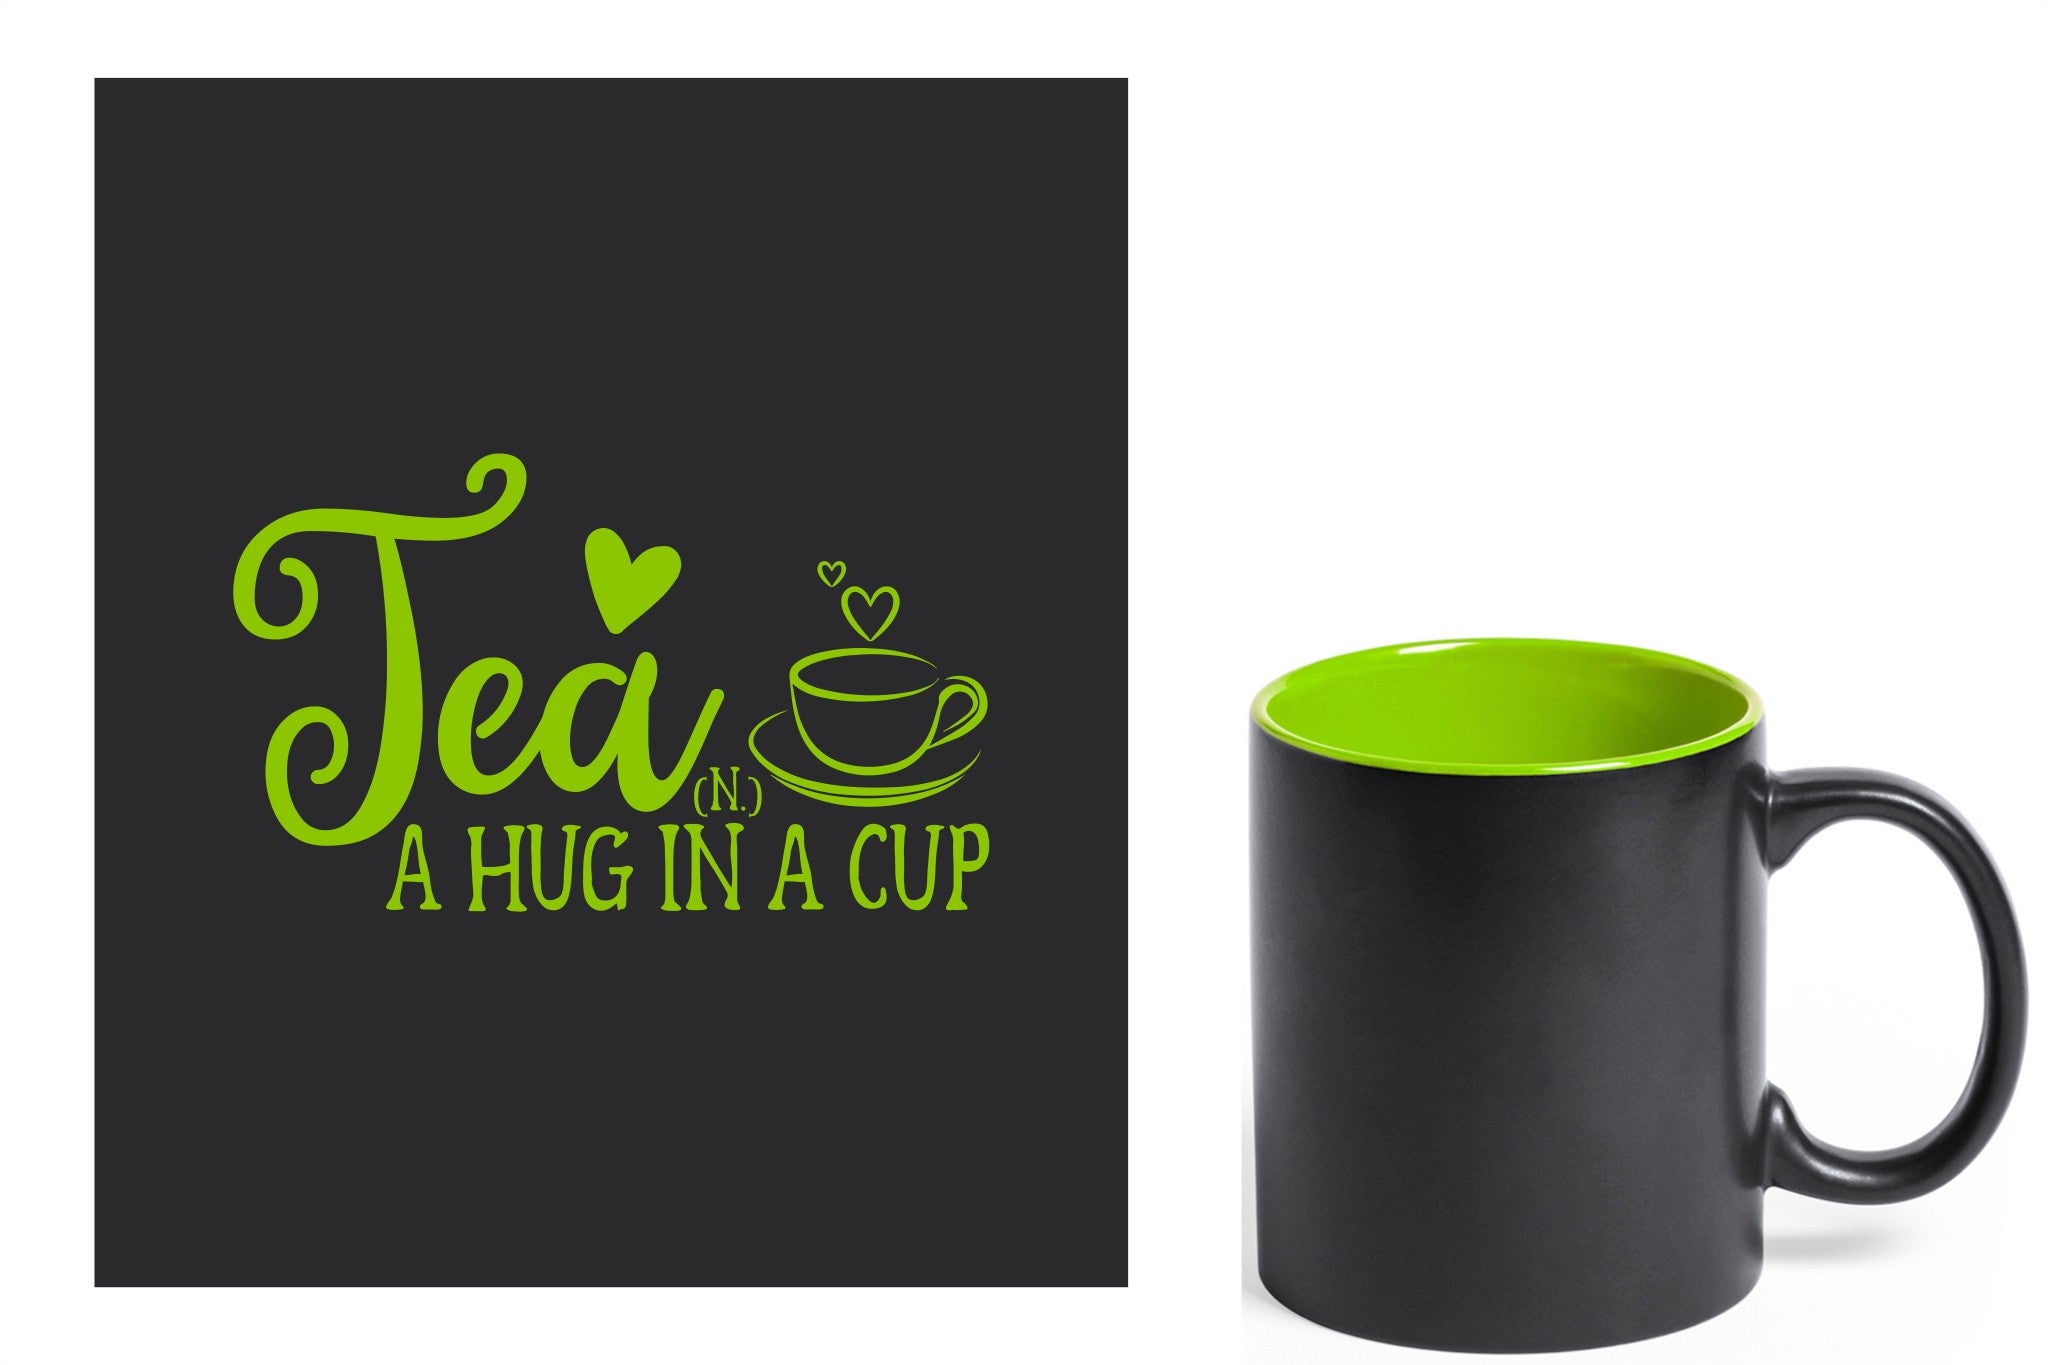 zwarte keramische mok met groene gravure  'Tea and a hug in a cup'.